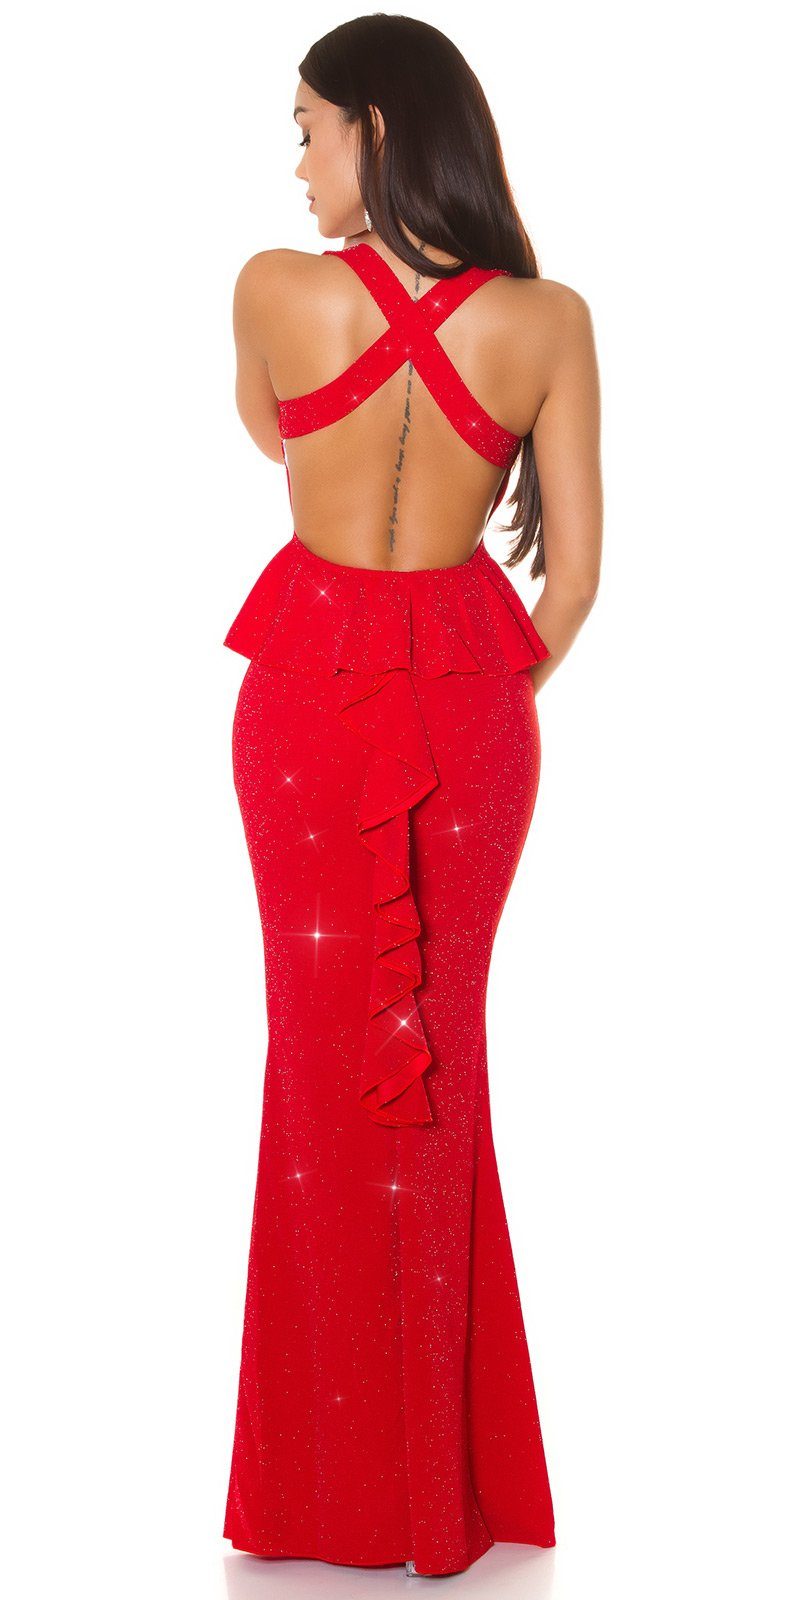 rotsilber Maxikleid Partykleid Koucla Schößchen glitzerndes und offenem Abendkleid Rücken mit